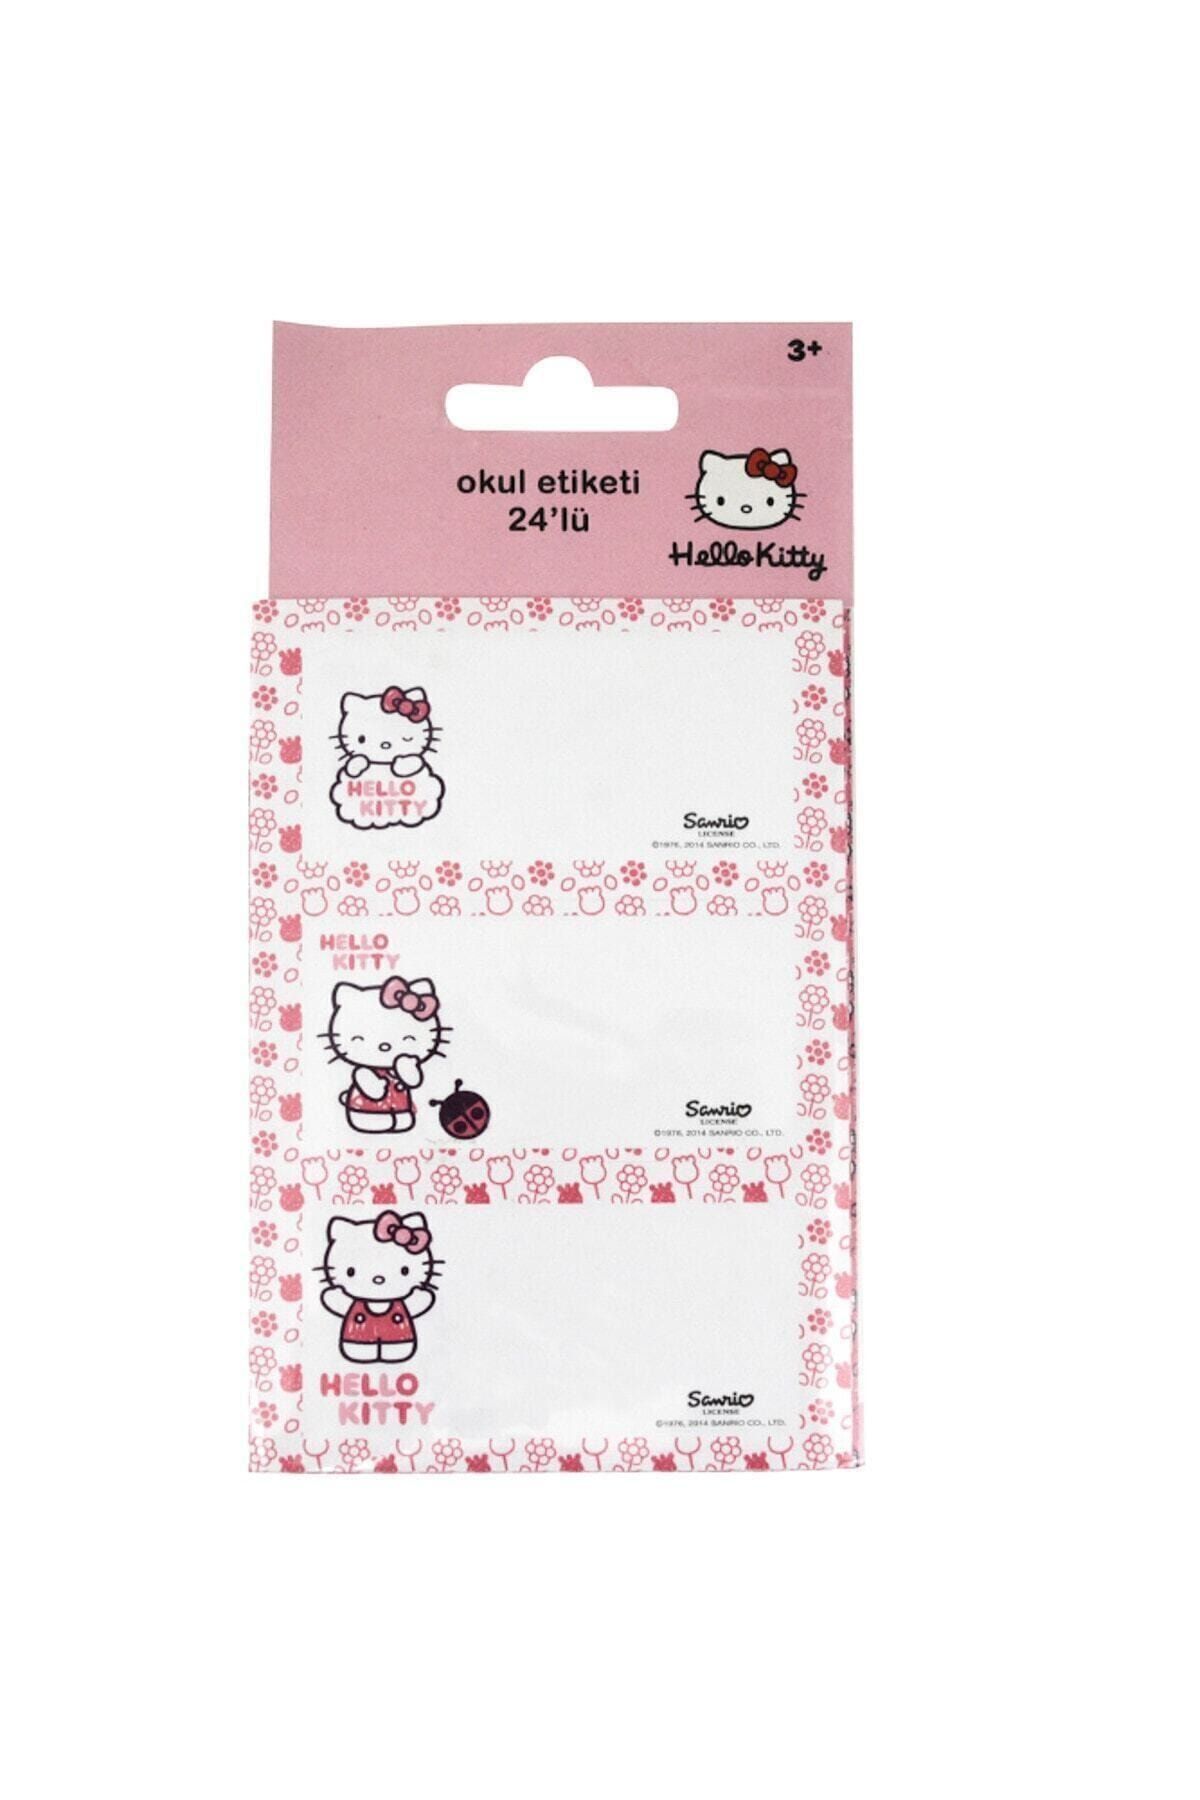 Umix Mynote Sticker Hello Kitty 24lü Okul Etiketi